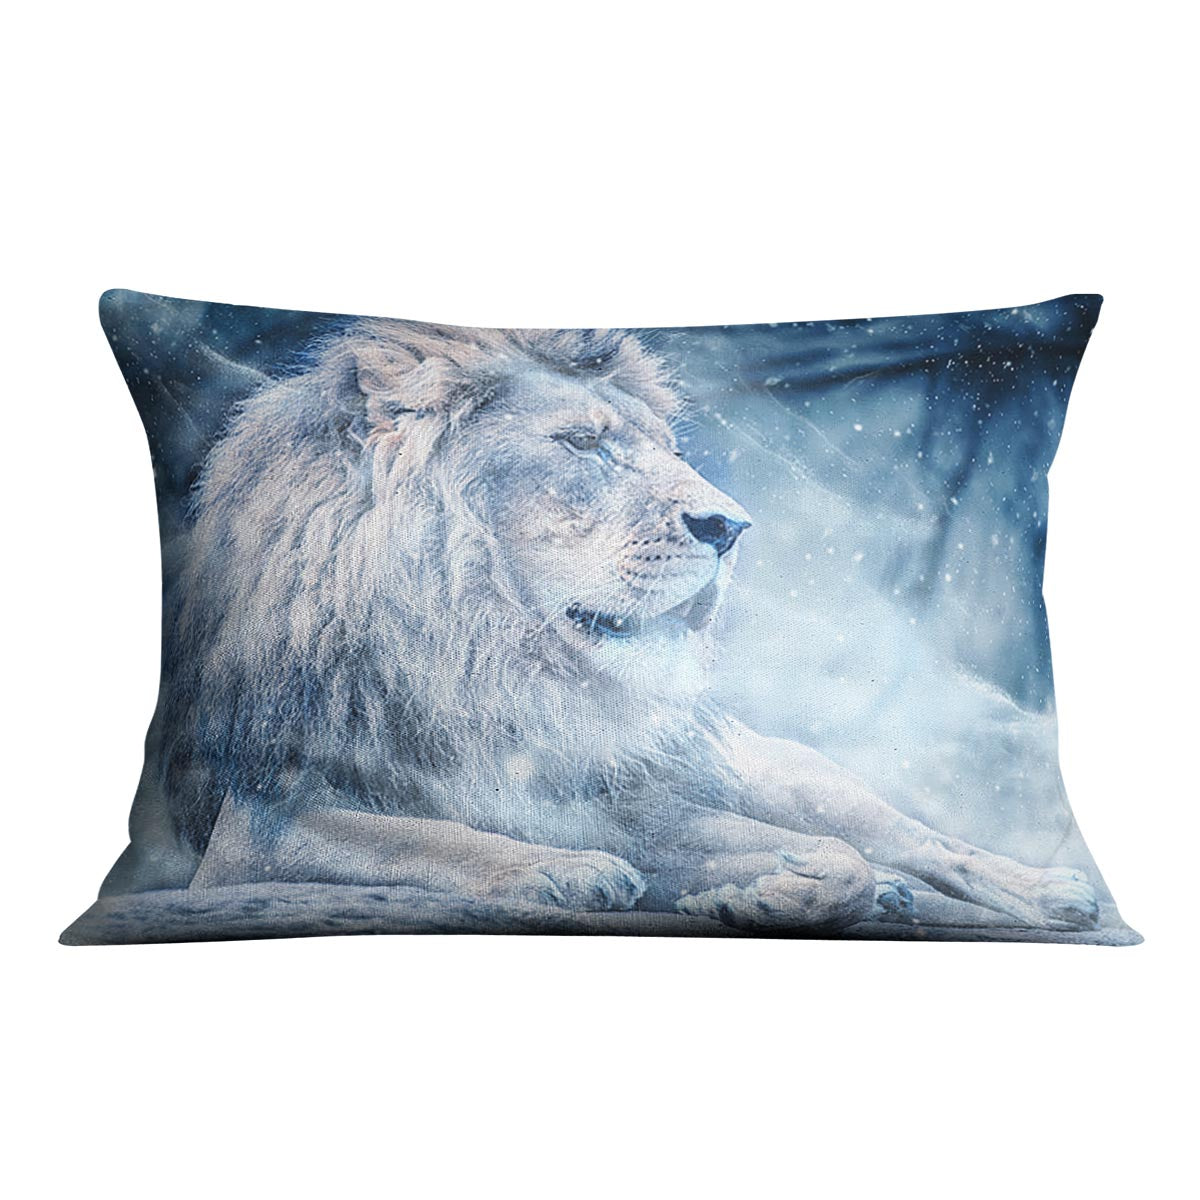 The White Lion Cushion